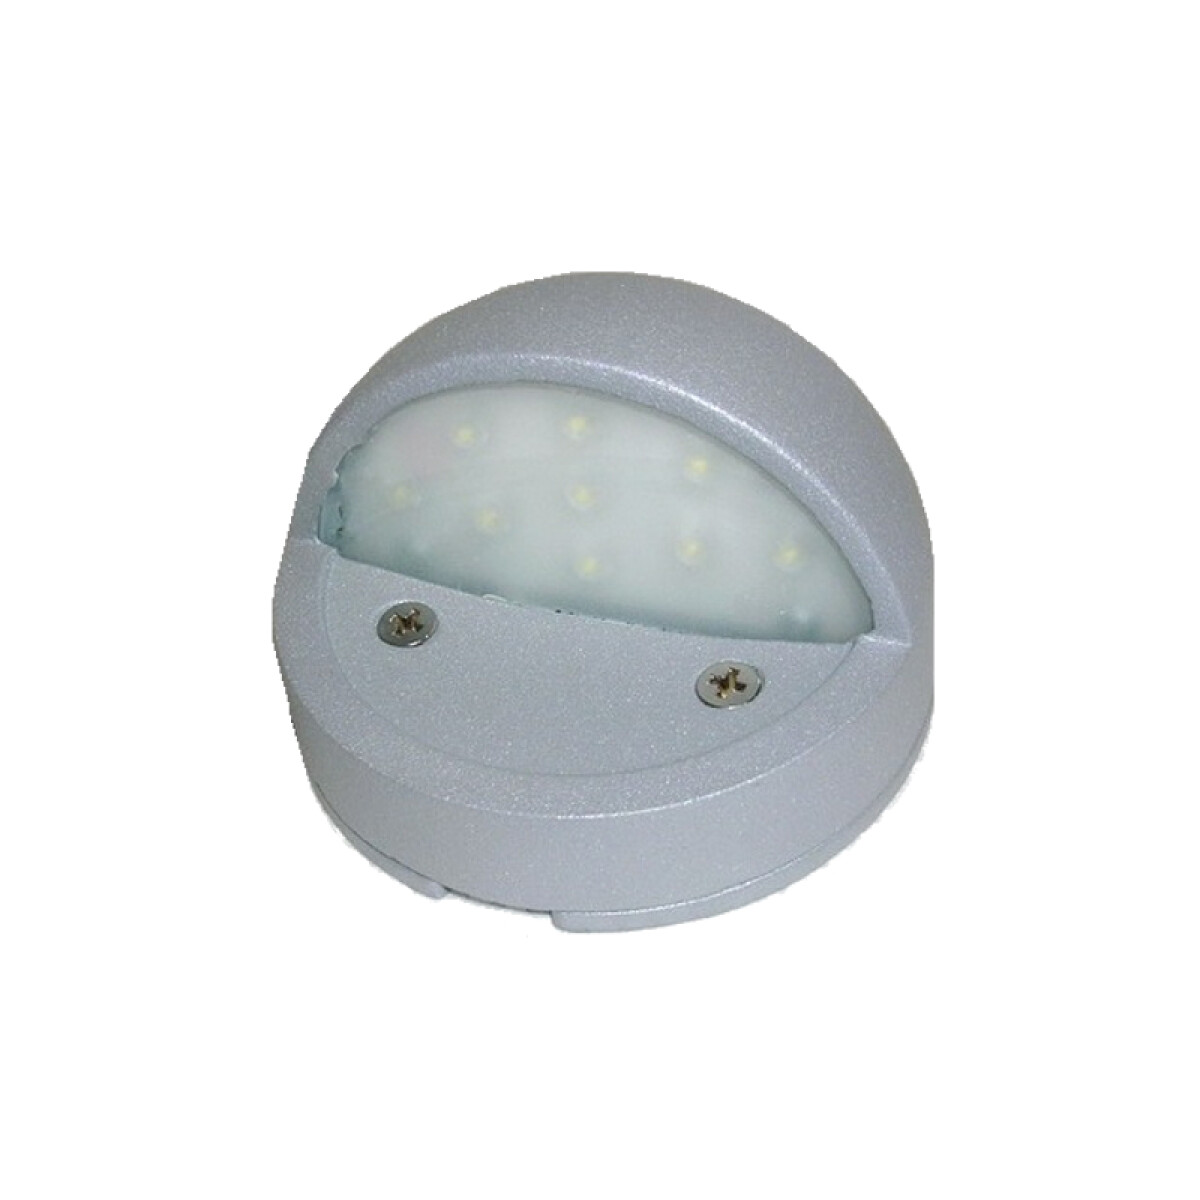 Aplique LED con párpado para exterior, color gris - AI0438 